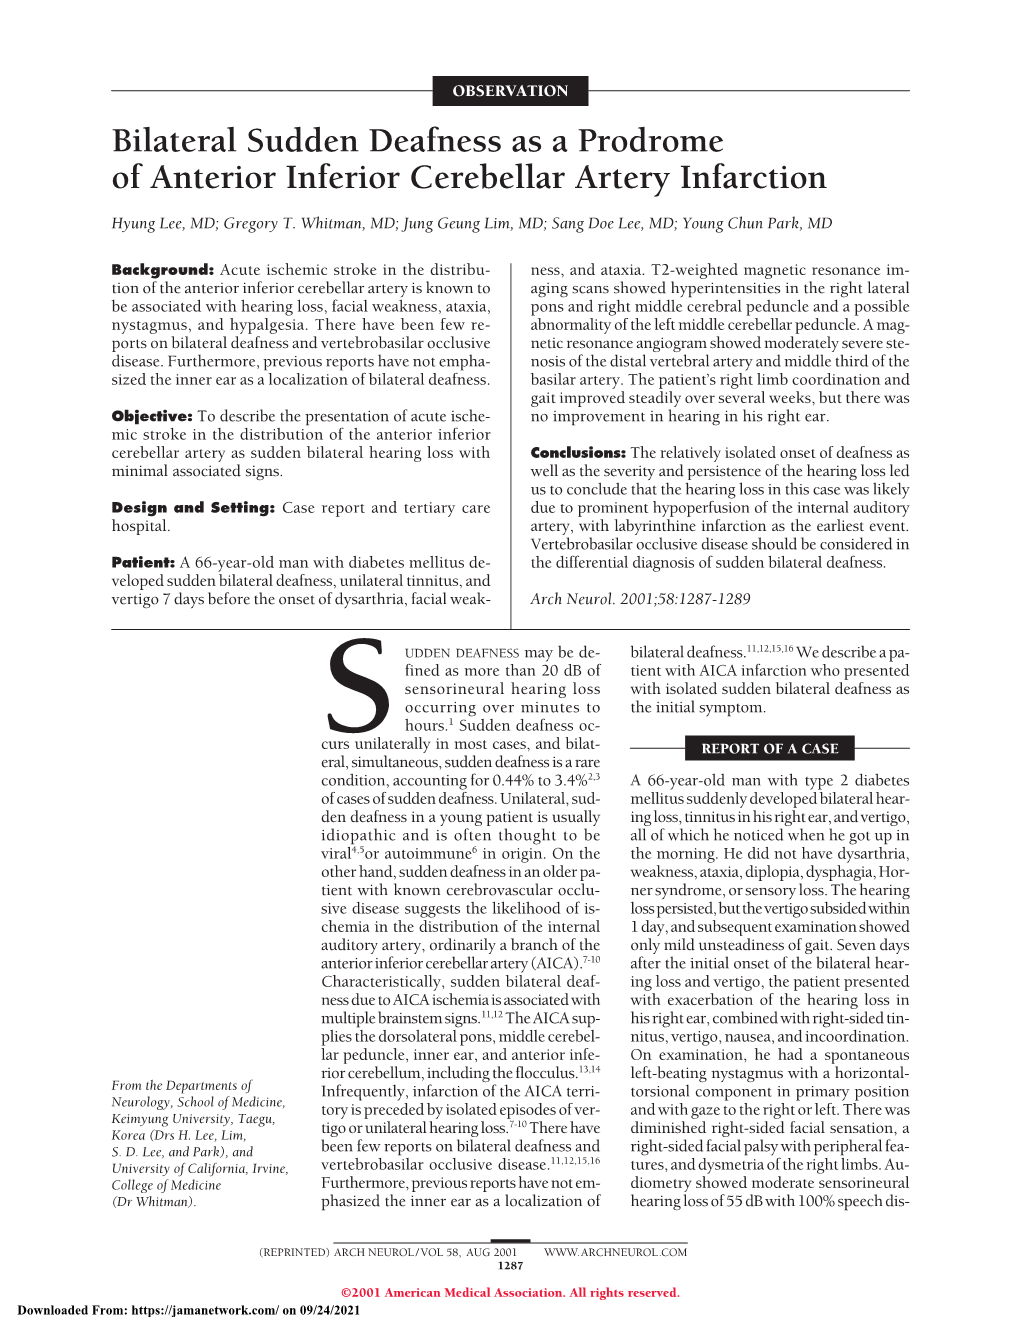 Bilateral Sudden Deafness As a Prodrome of Anterior Inferior Cerebellar Artery Infarction